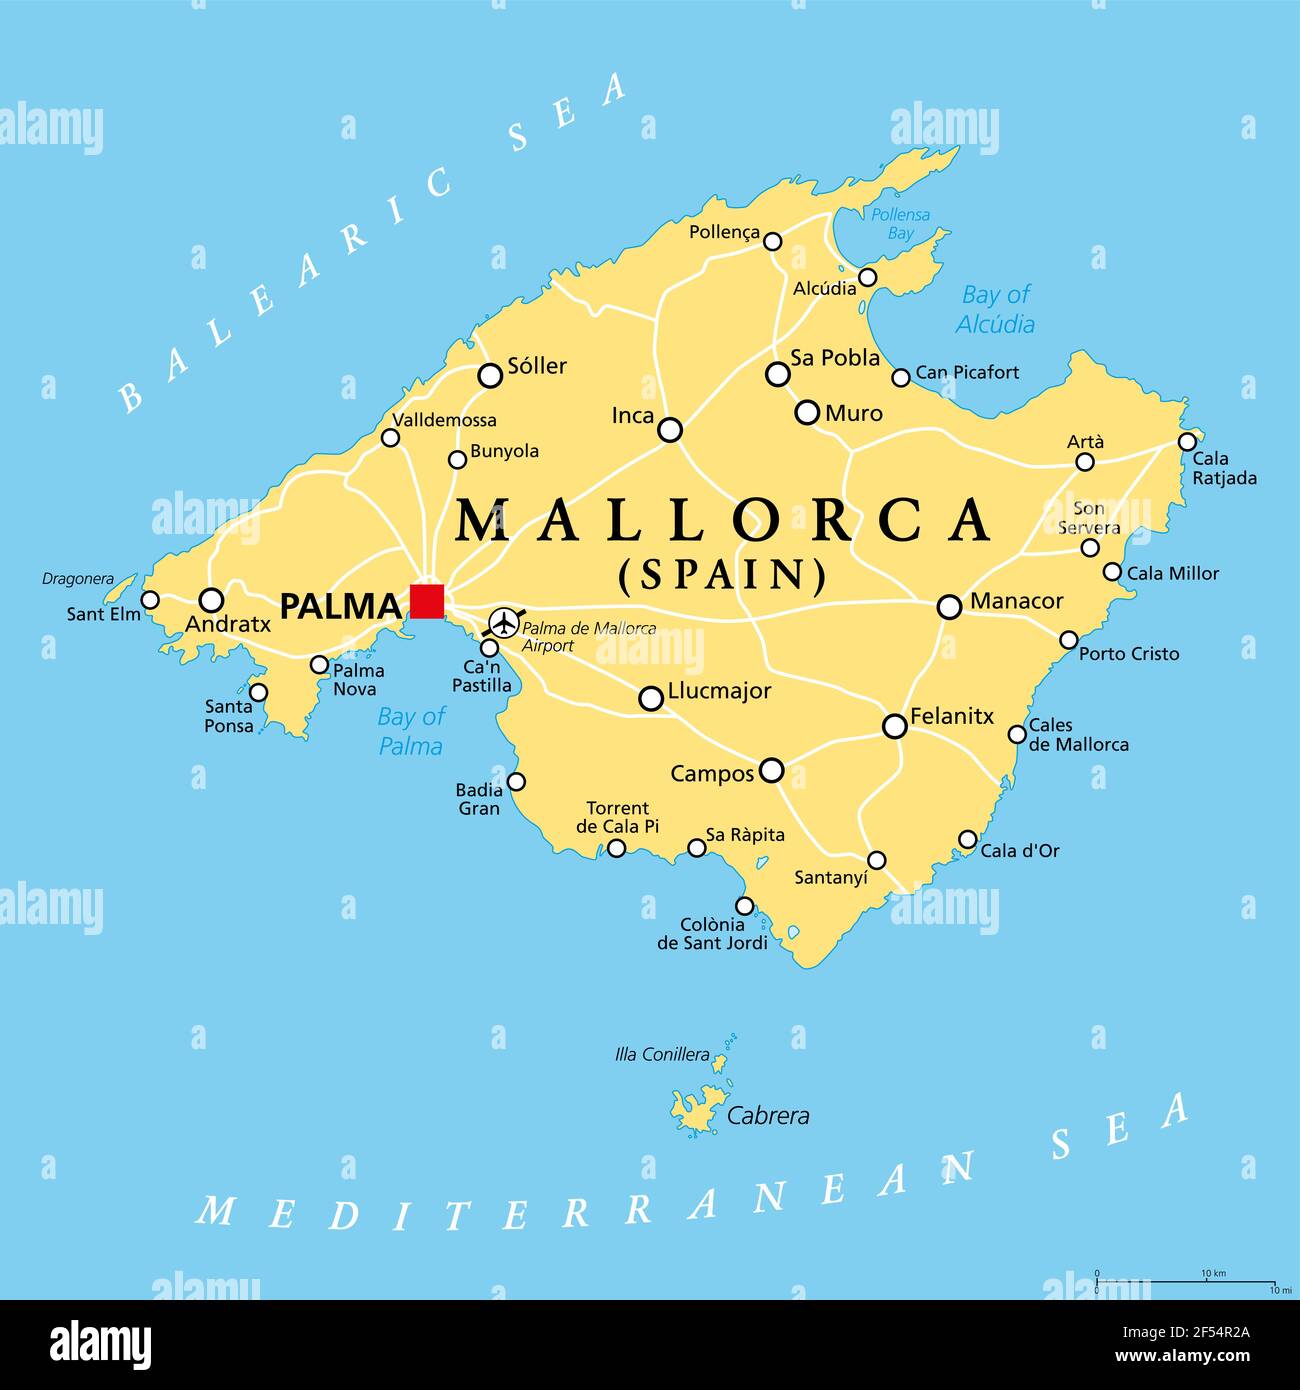 Mallorca map de palma Palma de